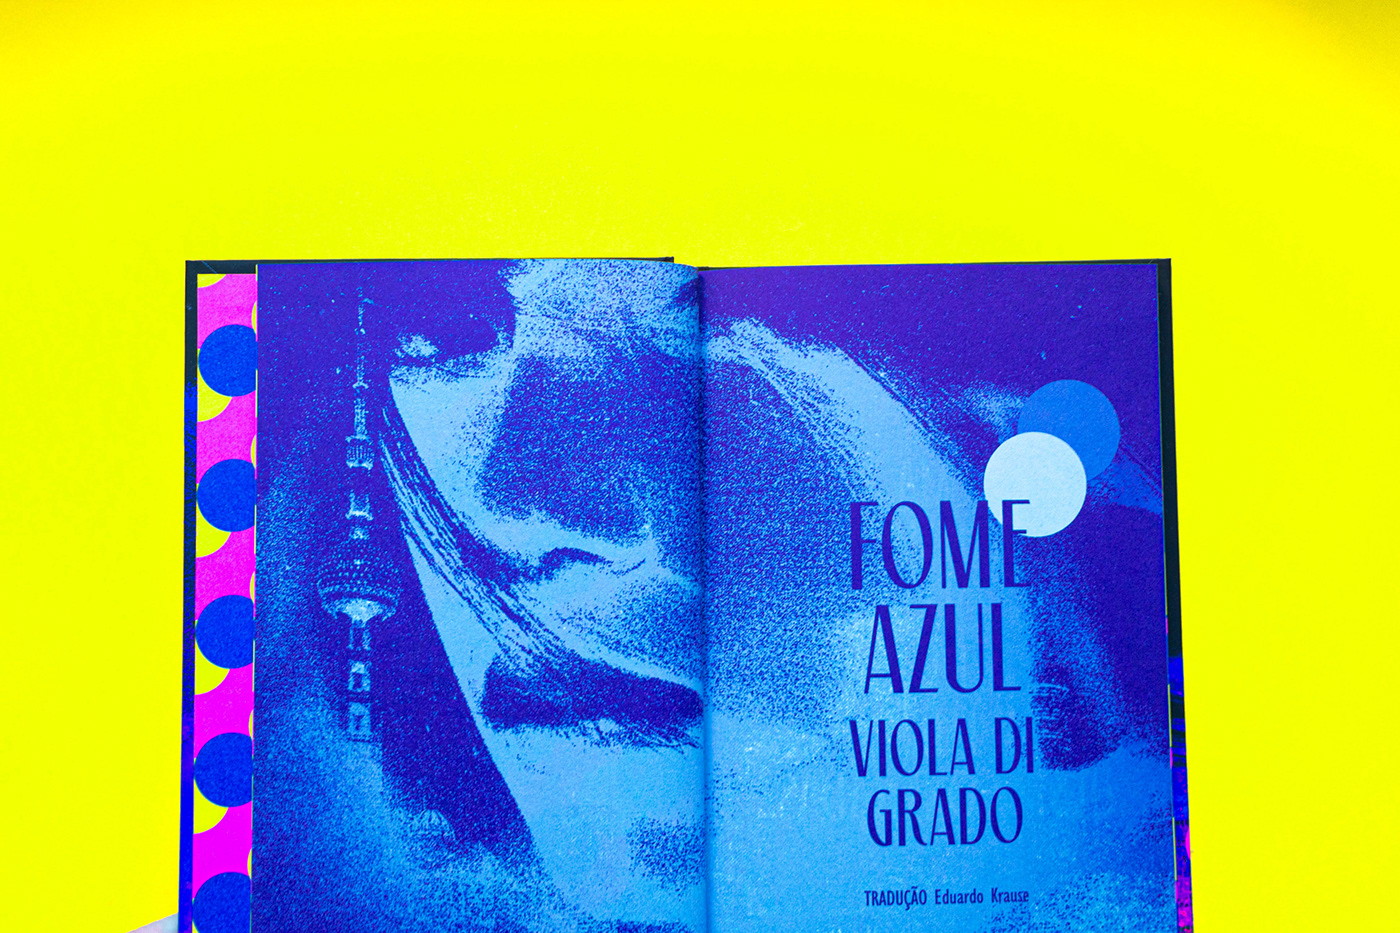 book cover book design Capa capa de livro copertina dublinense fame blu fome azul tokyo viola di grado